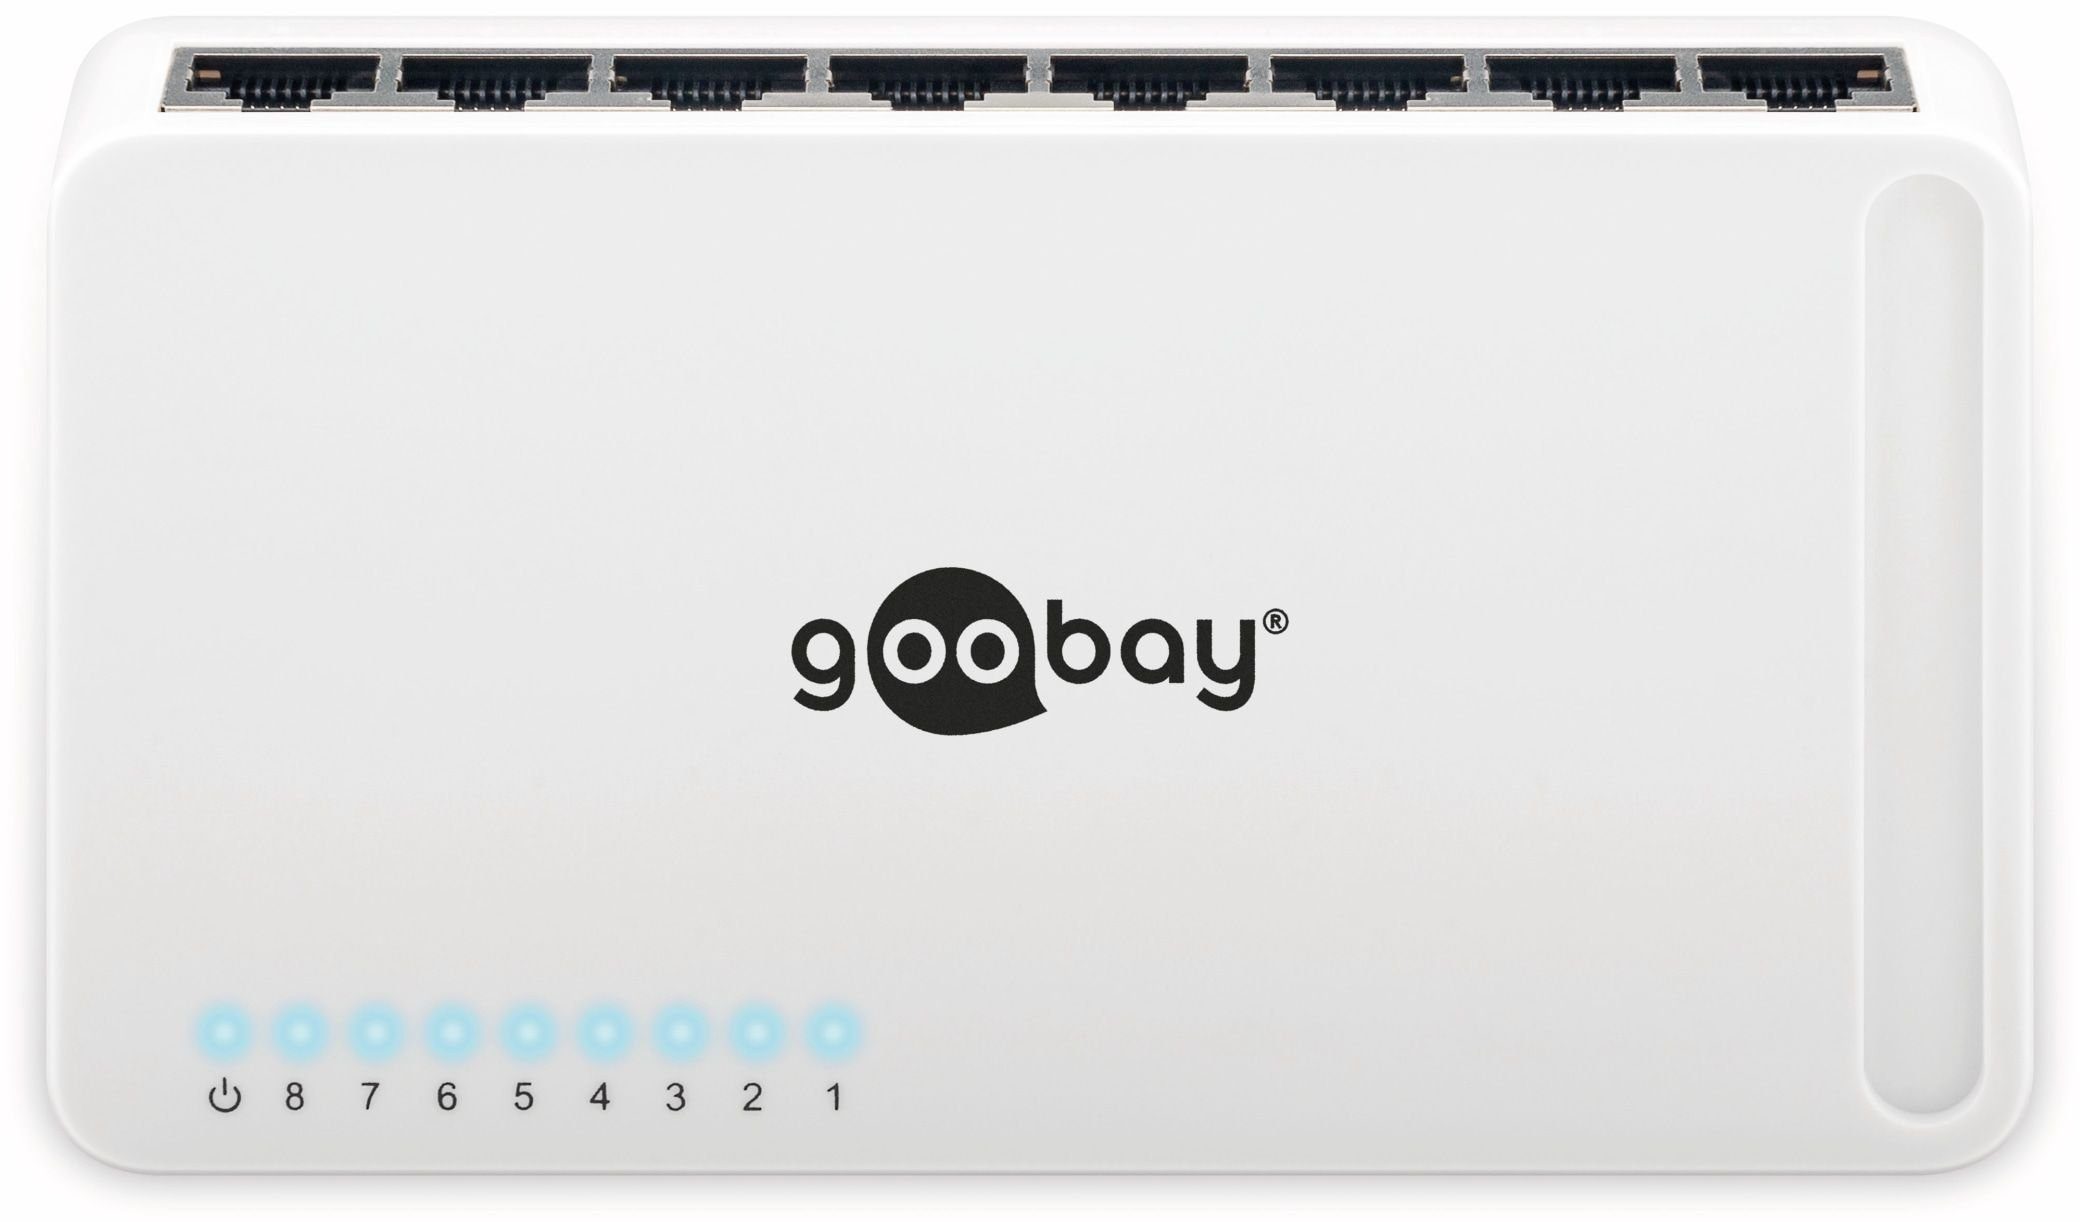 Goobay GOOBAY Gigabit Netzwerk-Switch 93373, 8-Port, weiß Netzwerk-Switch